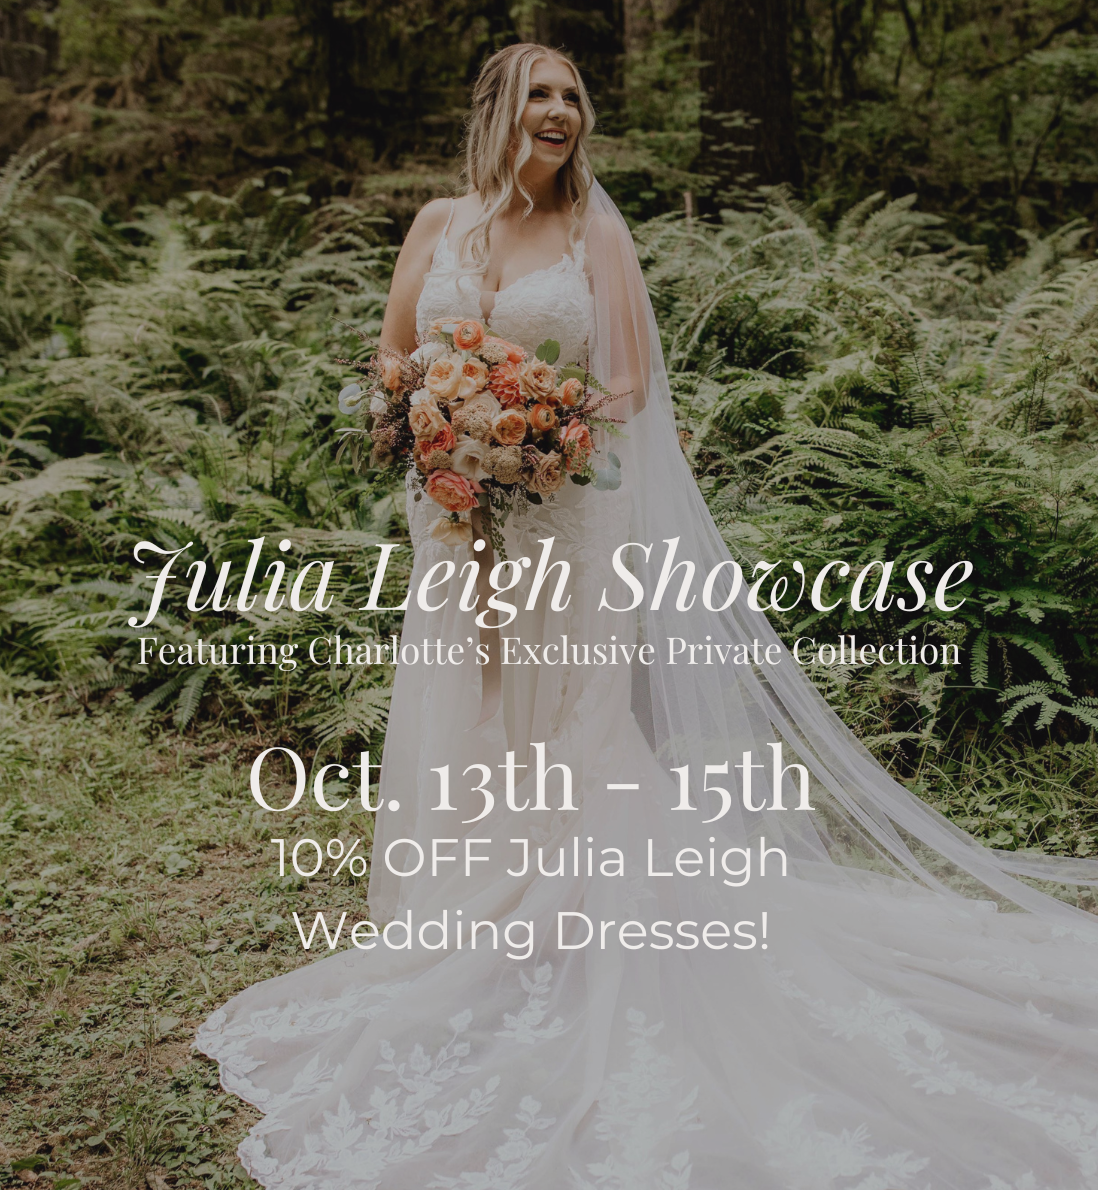 Julia Leigh Wedding Dresses Designer Showcase September 22nd - 24th